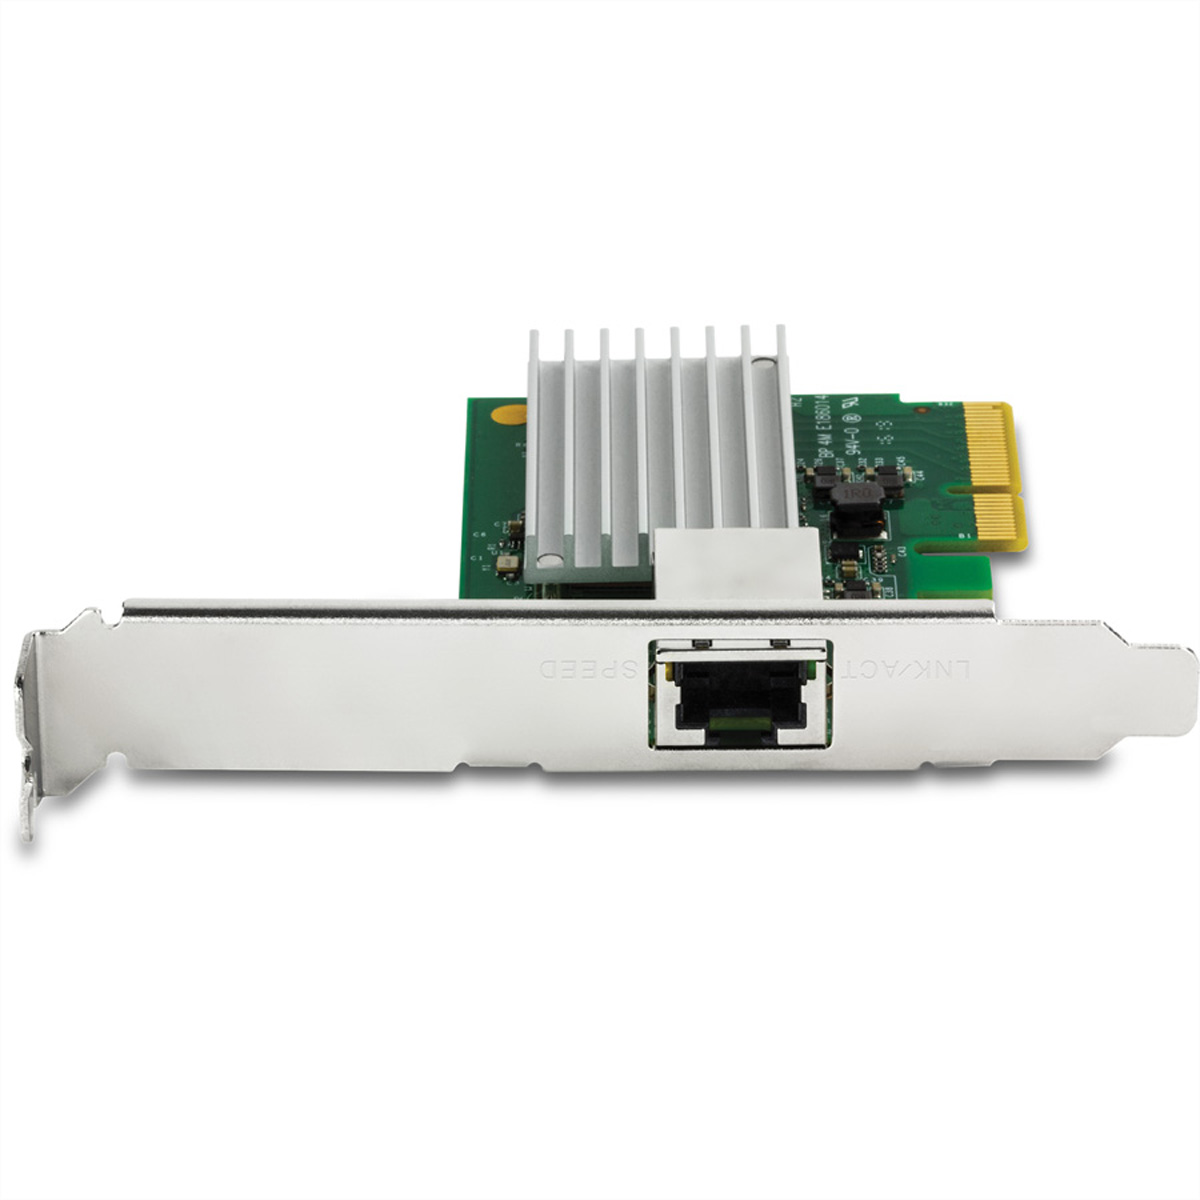 TRENDNET TEG-10GECTX 10 Gigabit PCIe Network Gigabit Adapter Ethernet Adapter